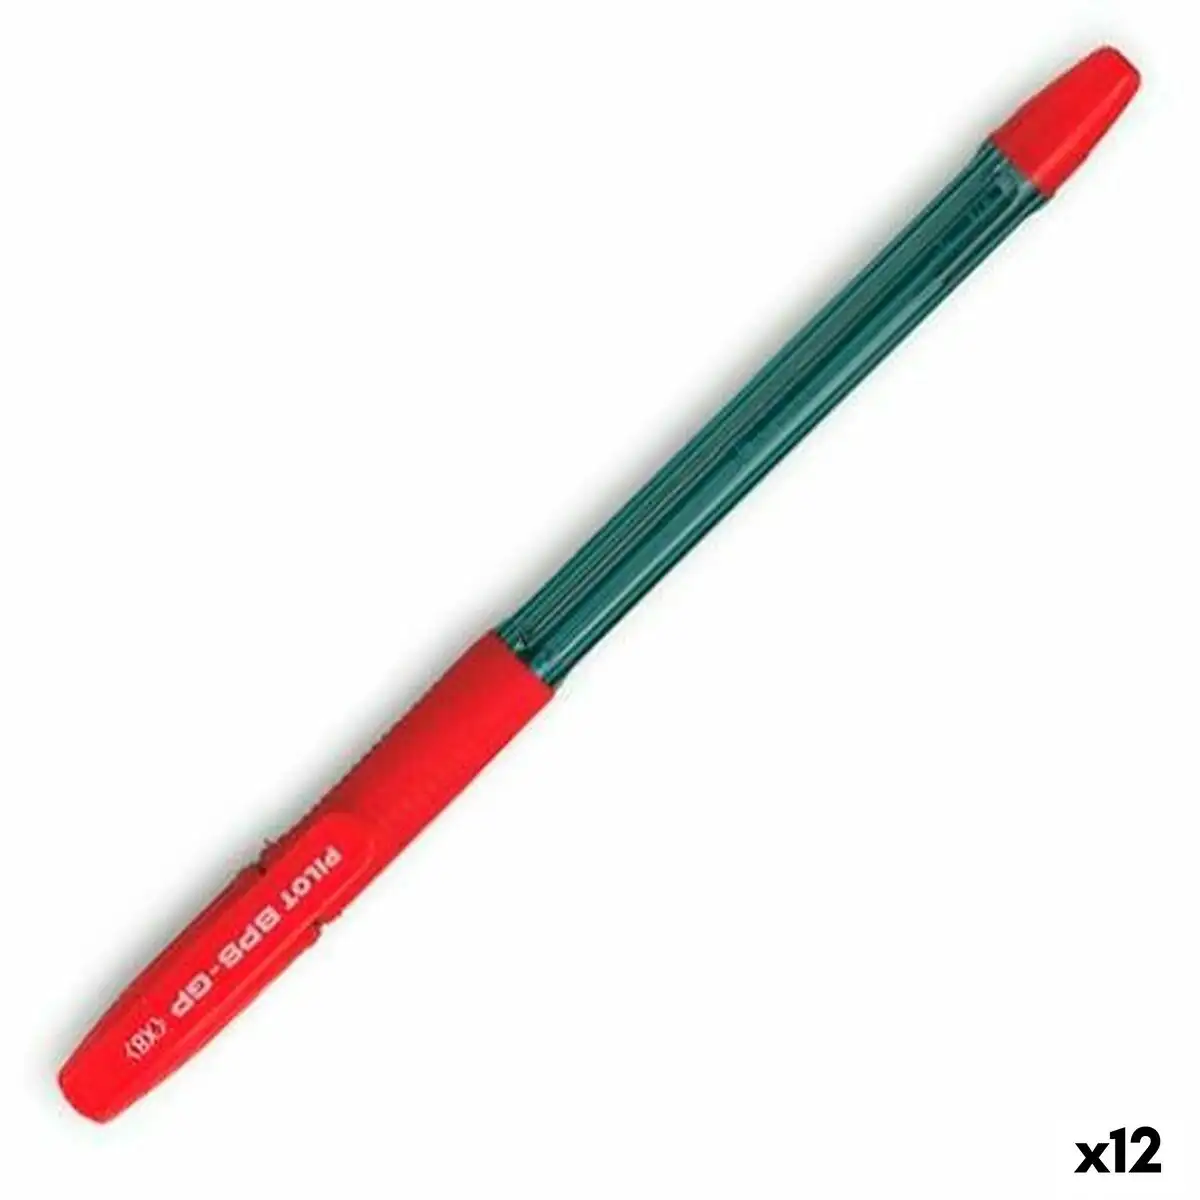 Crayon pilot bps gp rouge 0 4 mm 12 unites _9676. DIAYTAR SENEGAL - Votre Destination pour un Shopping Réfléchi. Découvrez notre gamme variée et choisissez des produits qui correspondent à vos valeurs et à votre style de vie.